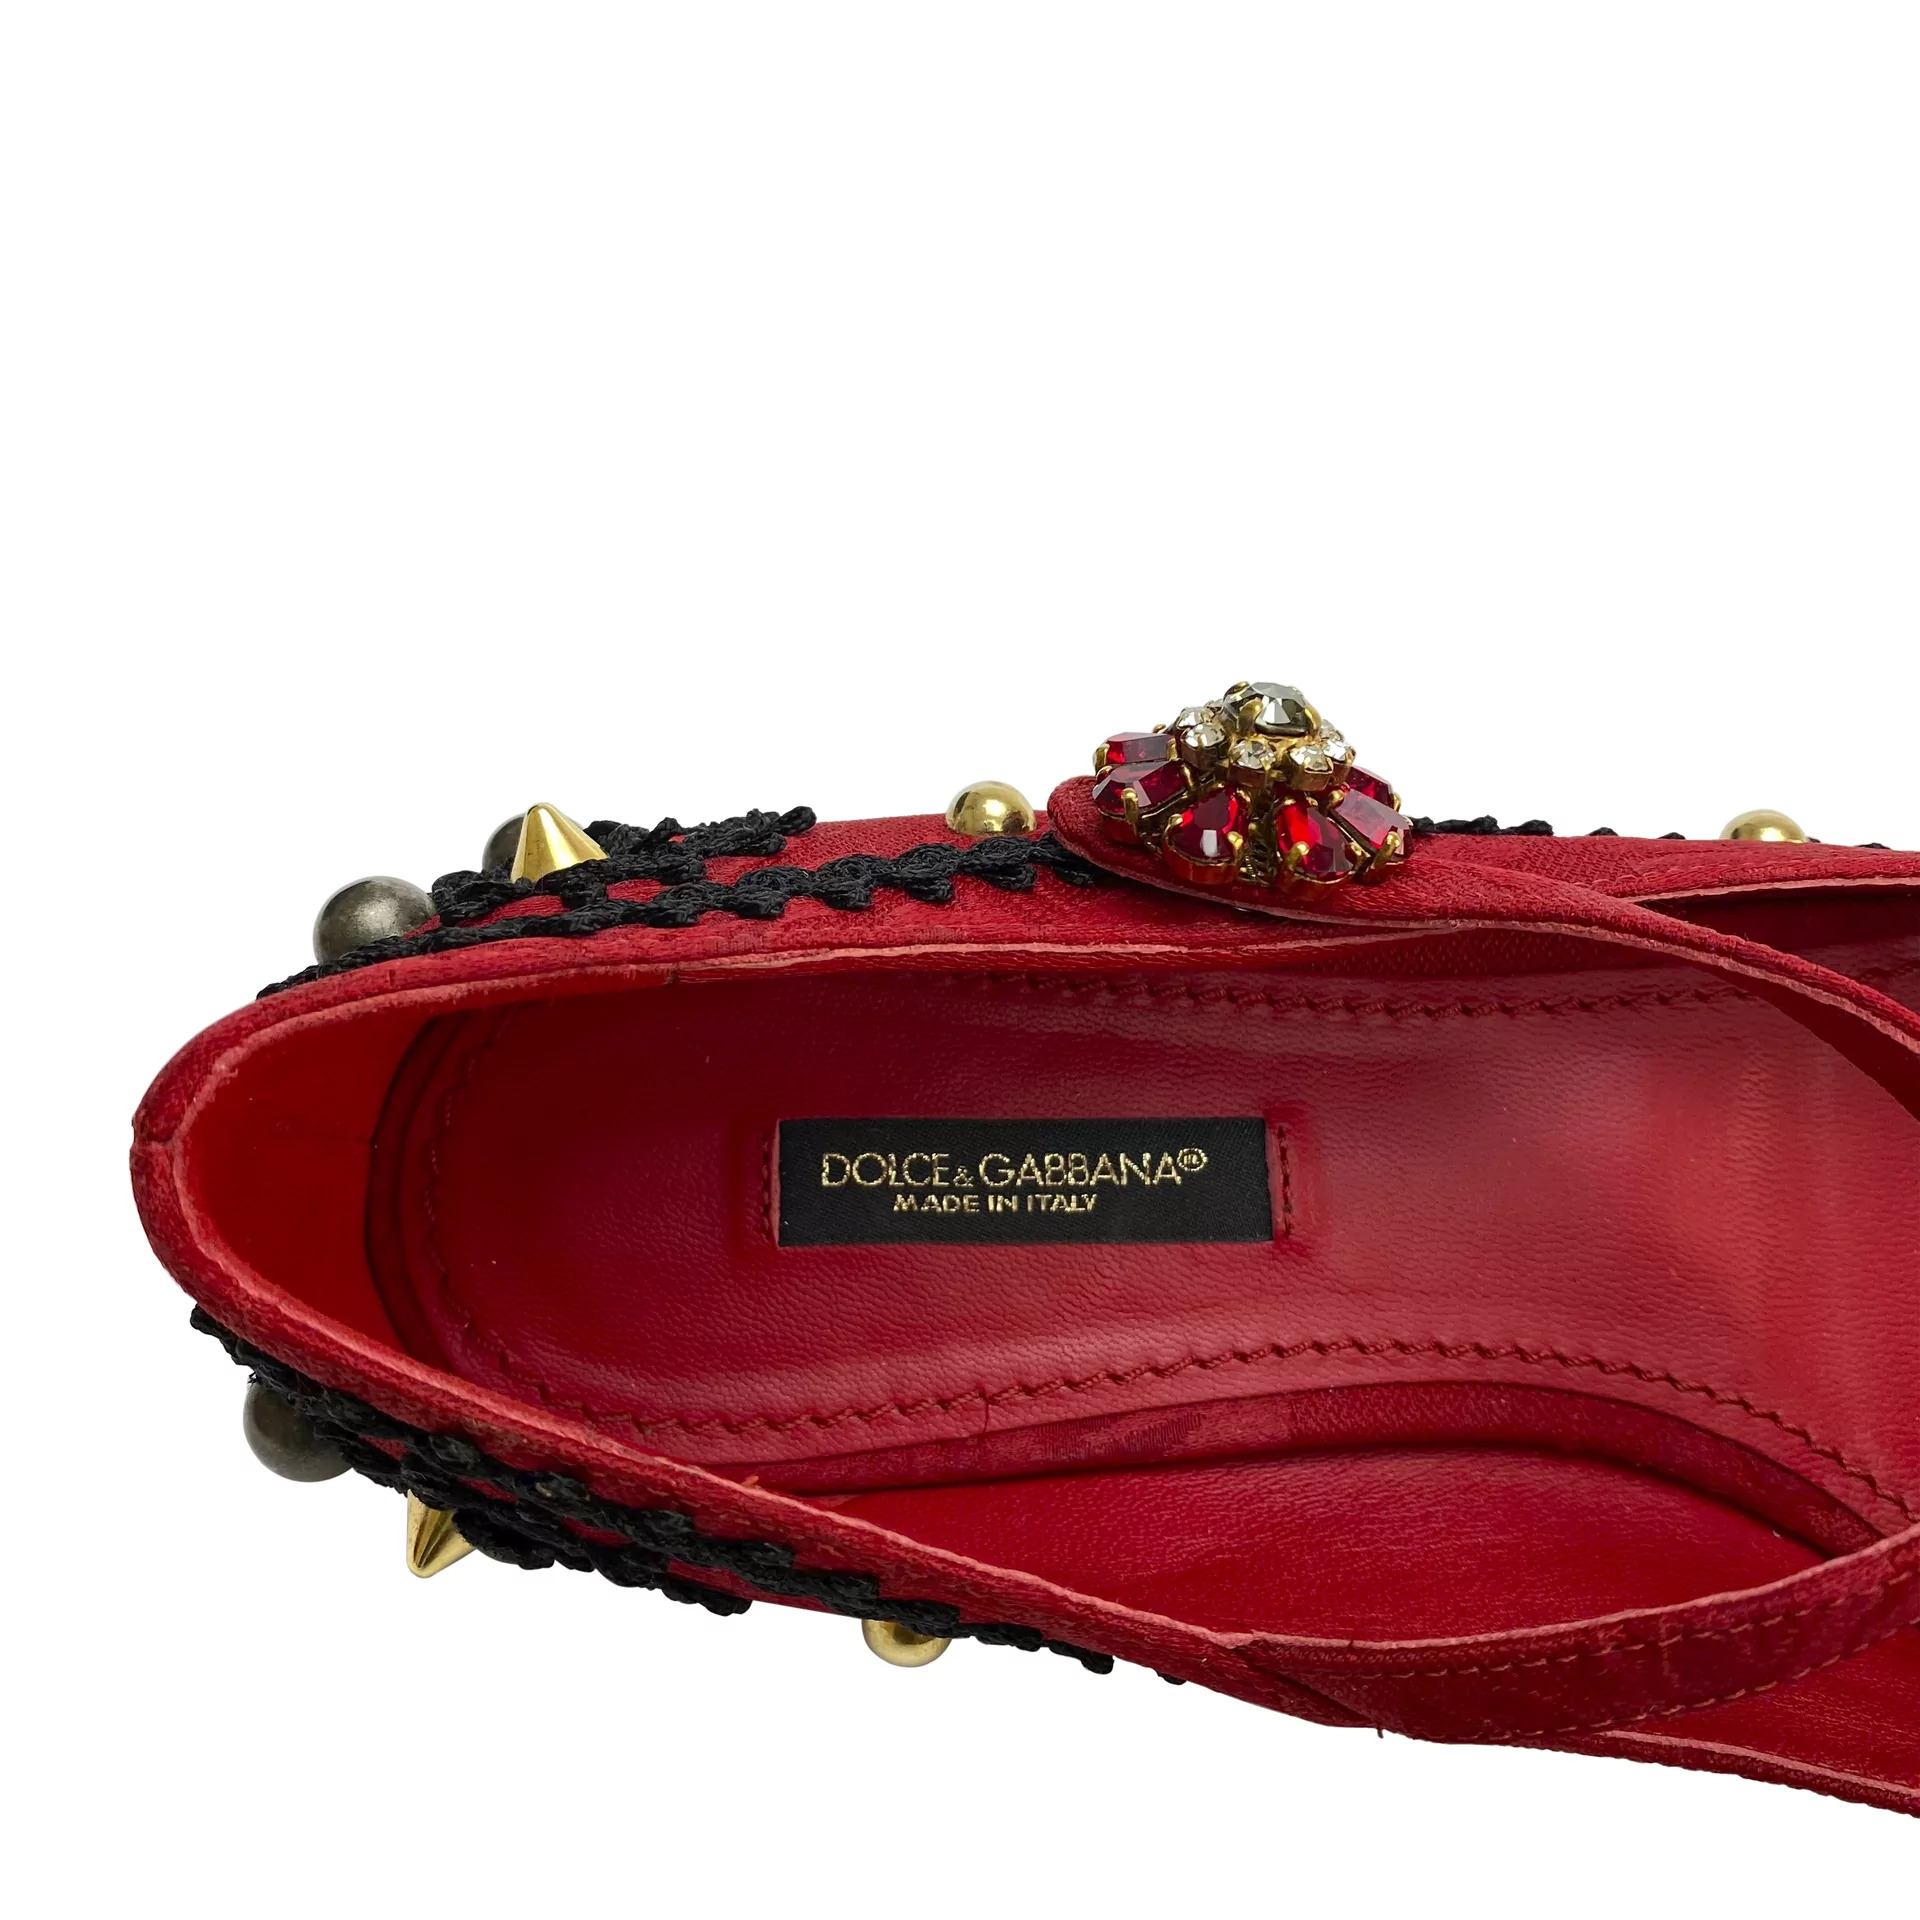 Sapatilha Dolce & Gabbana Vermelha Bordada